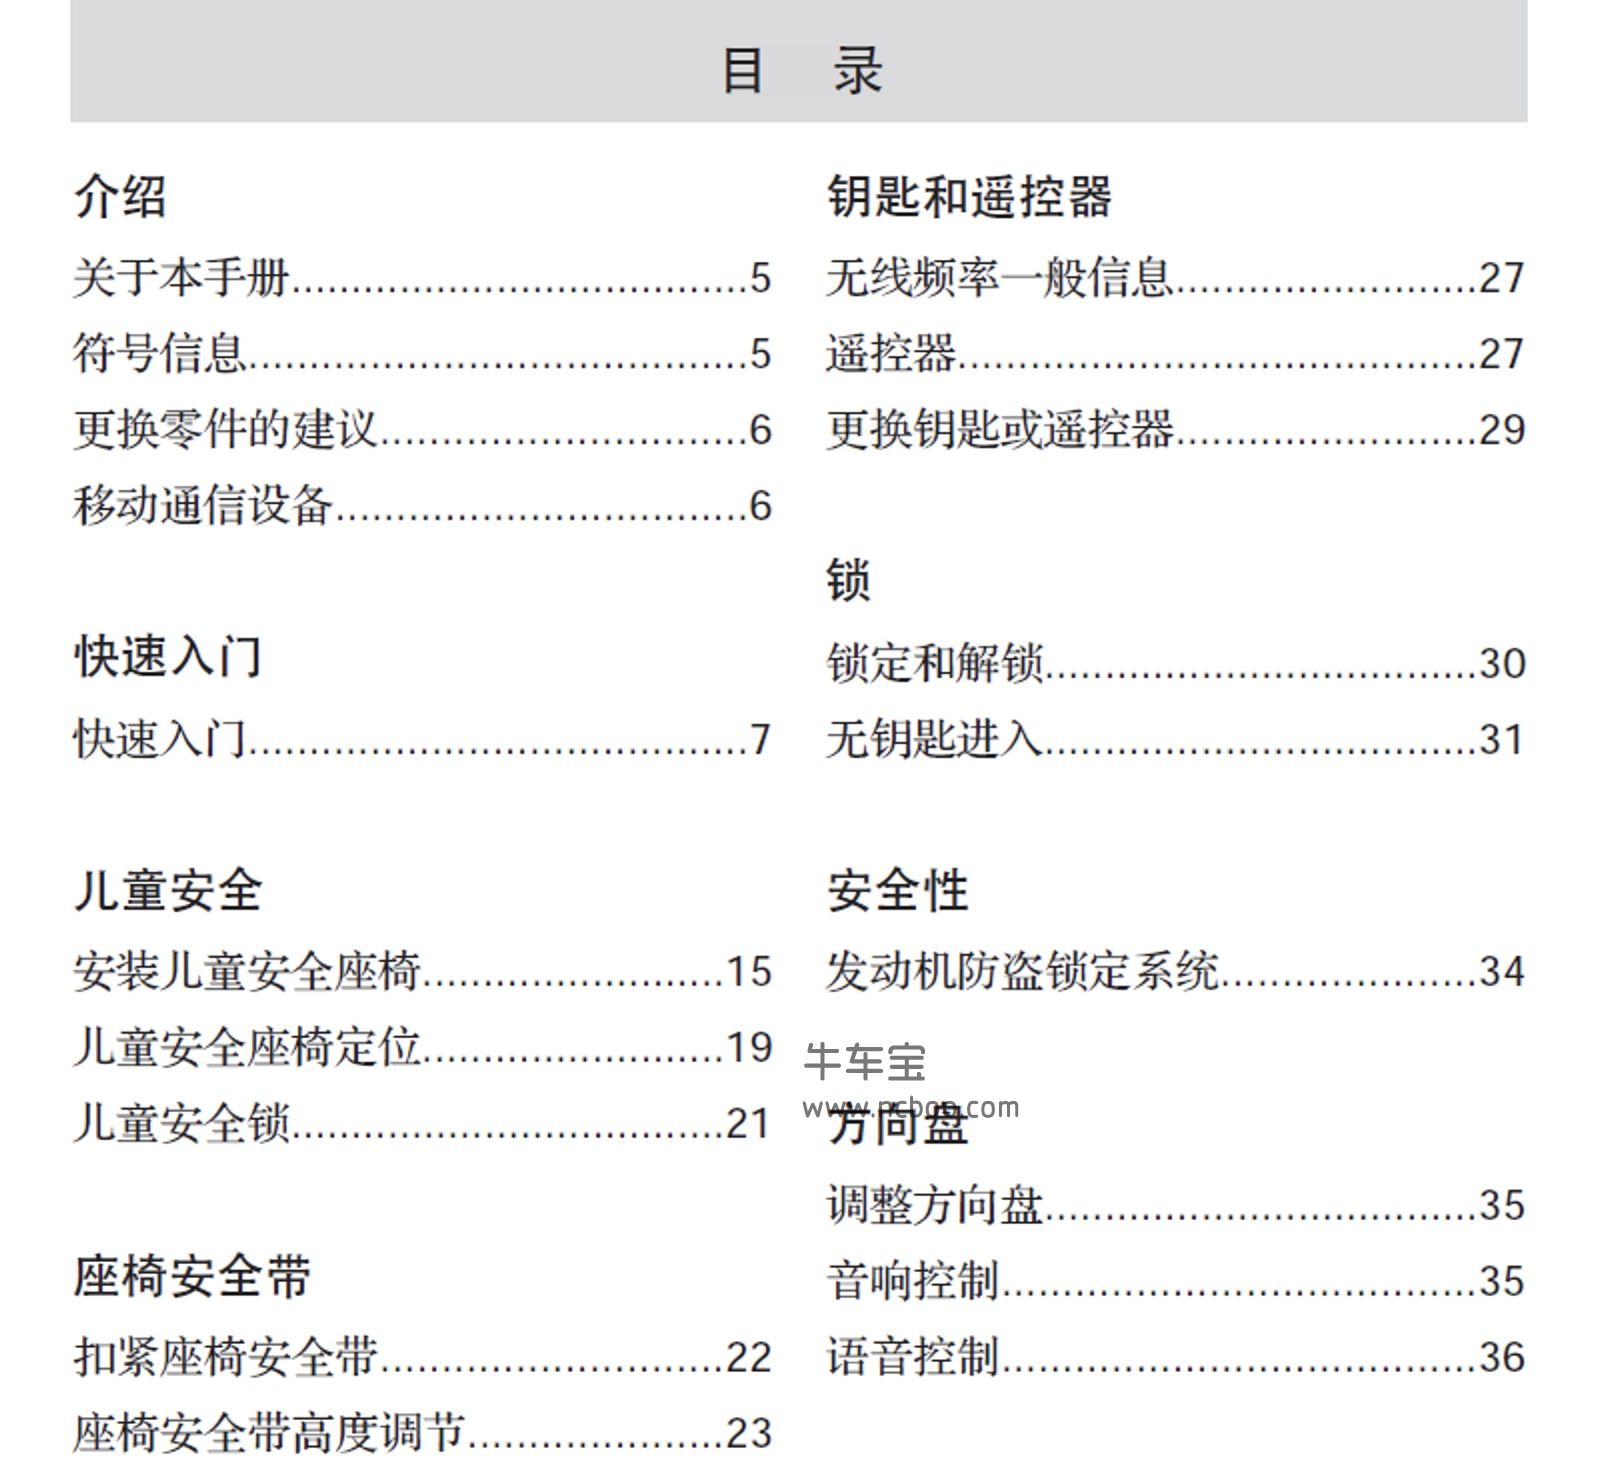 2013-2014款福特嘉年华用户手册-产品使用说明书pdf下载